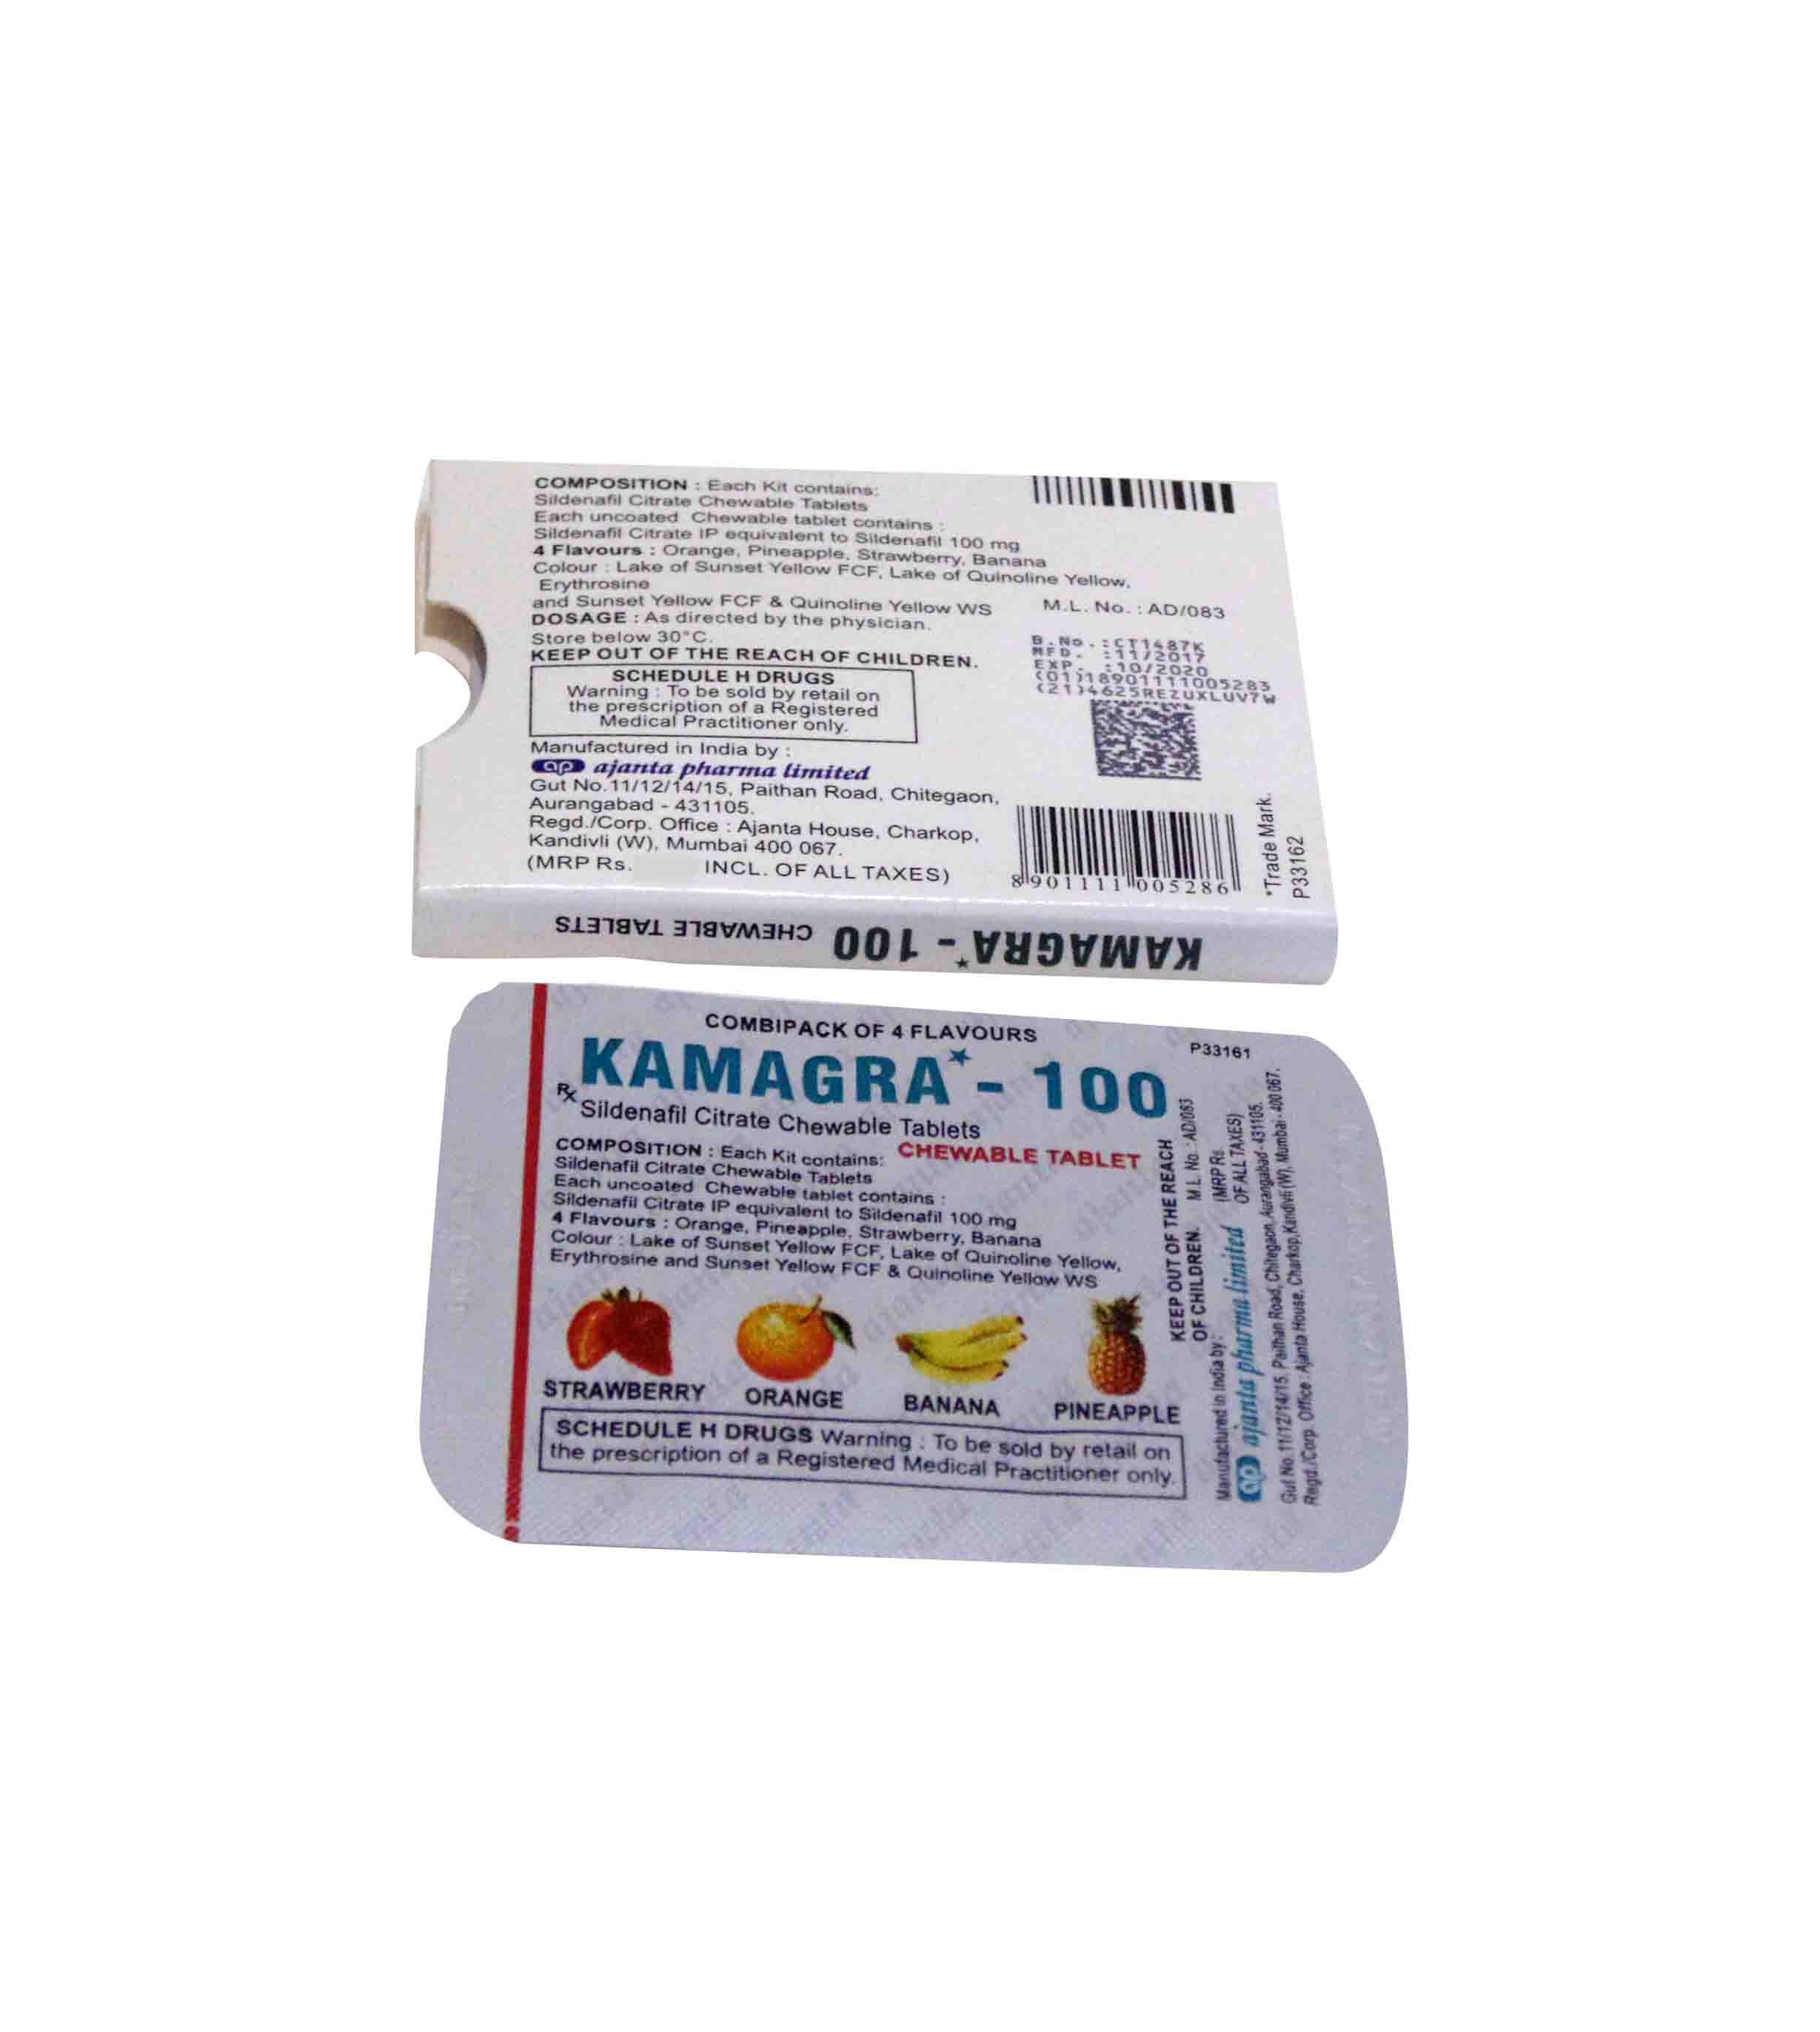 Week Pack Kamagra Oral Jelly 100mg, Buy Kamagra Oral Jelly Online